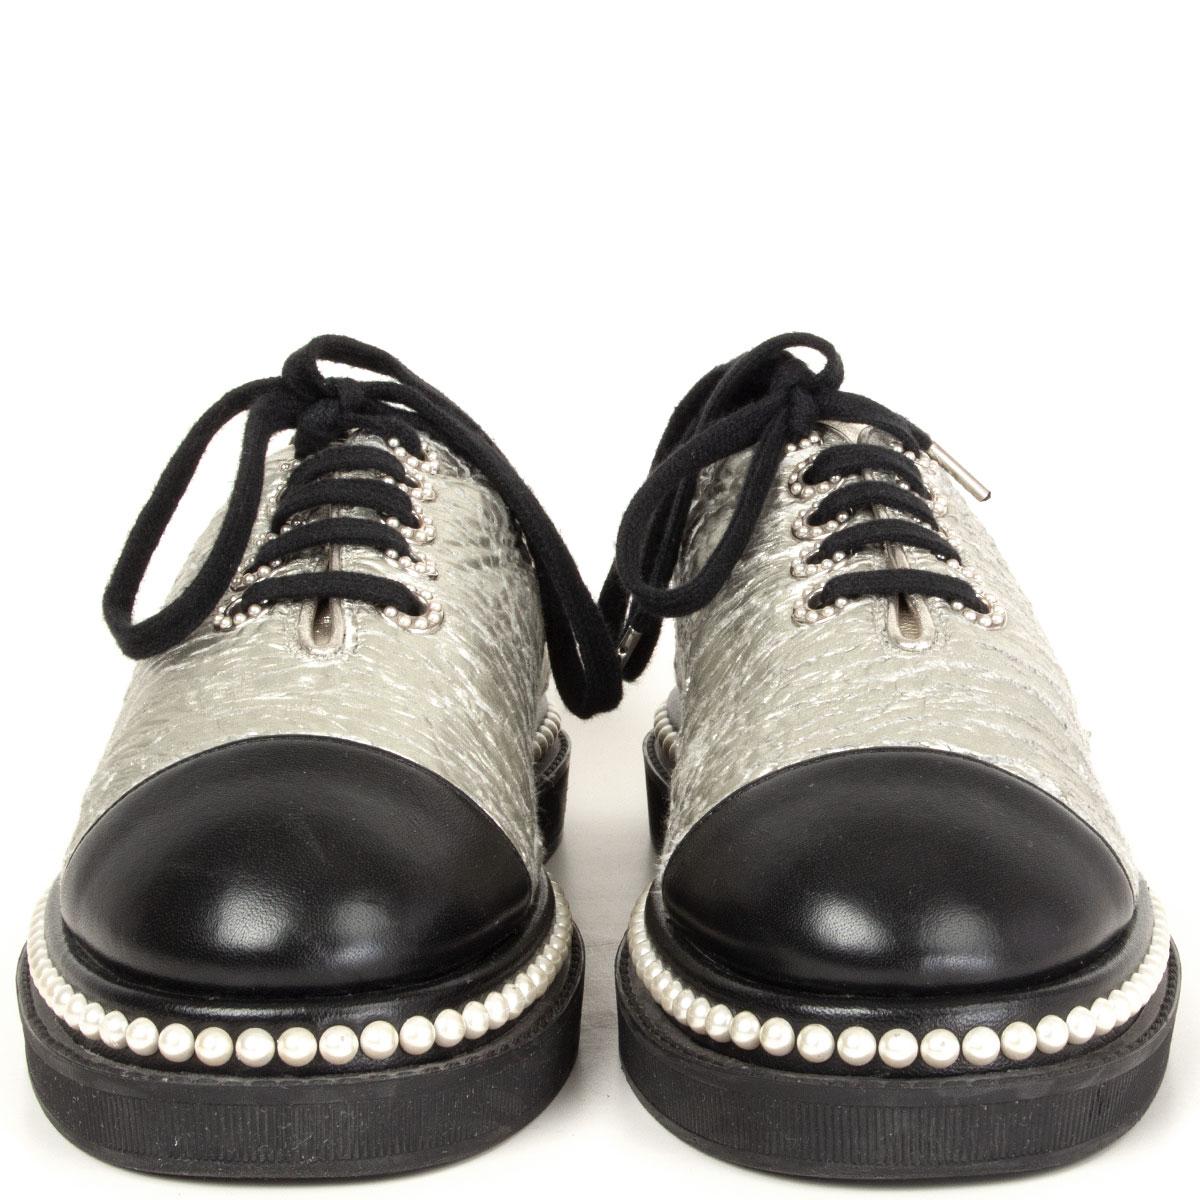 100% authentische Chanel Schuhe in warmem Silber und schwarzem glatten Lammfell. Absatz mit CC-Logo-Perlenverzierung und Ösen. Sie sind mit einer Perlenverzierung an der Zwischensohle, einer ledergefütterten Innensohle und einer Vollgummisohle